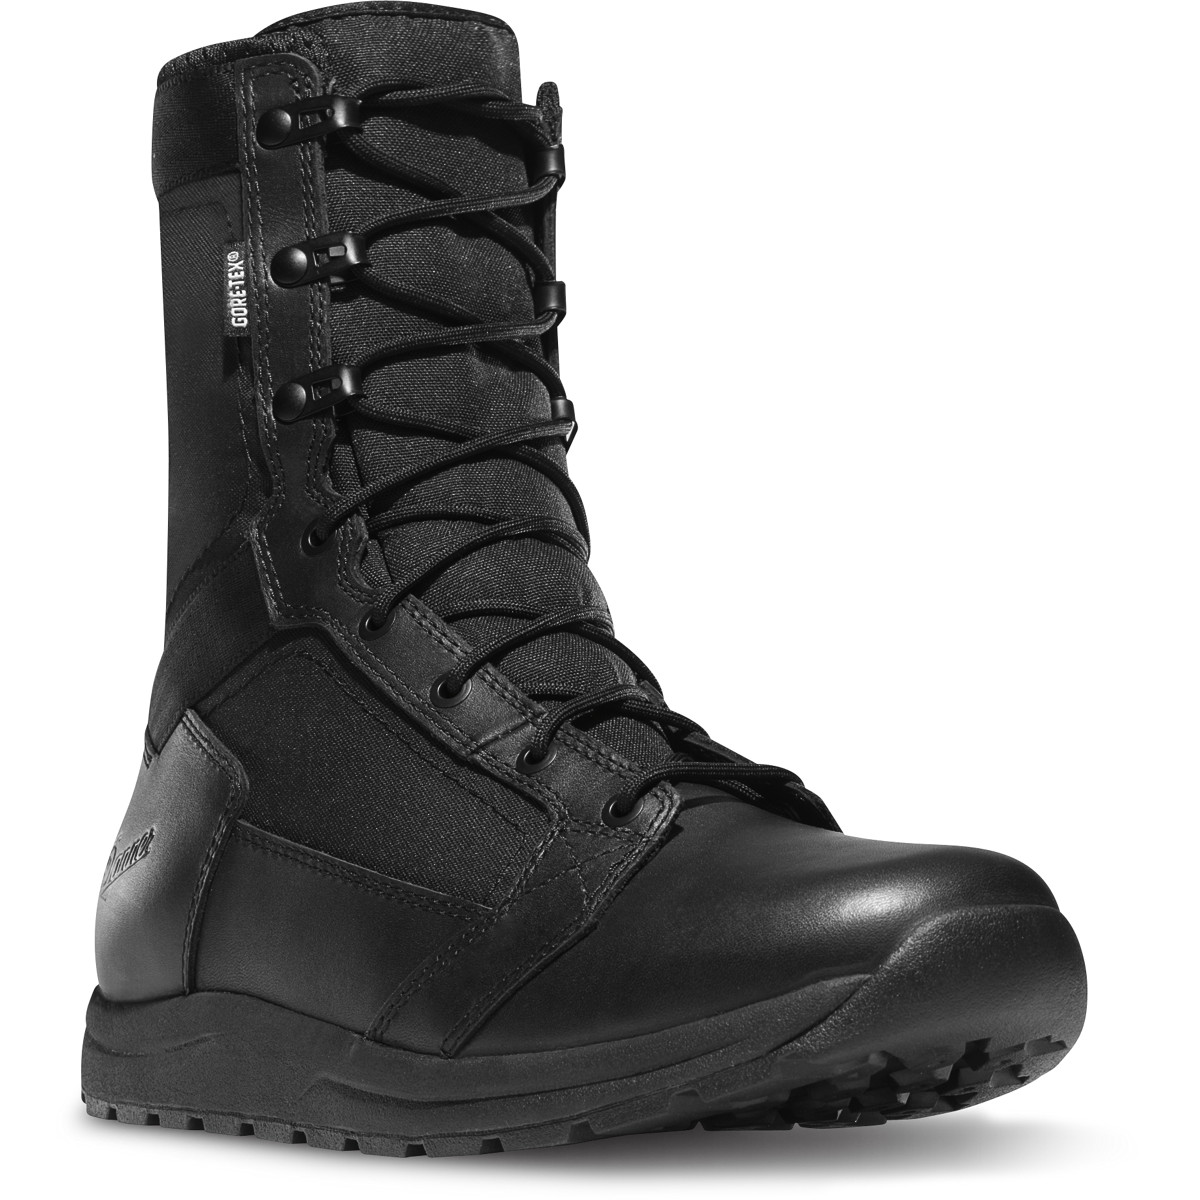 Danner Men's 50122 Tachyon 8" Black GTX Law Enforcement Tactical Shoes Boots 